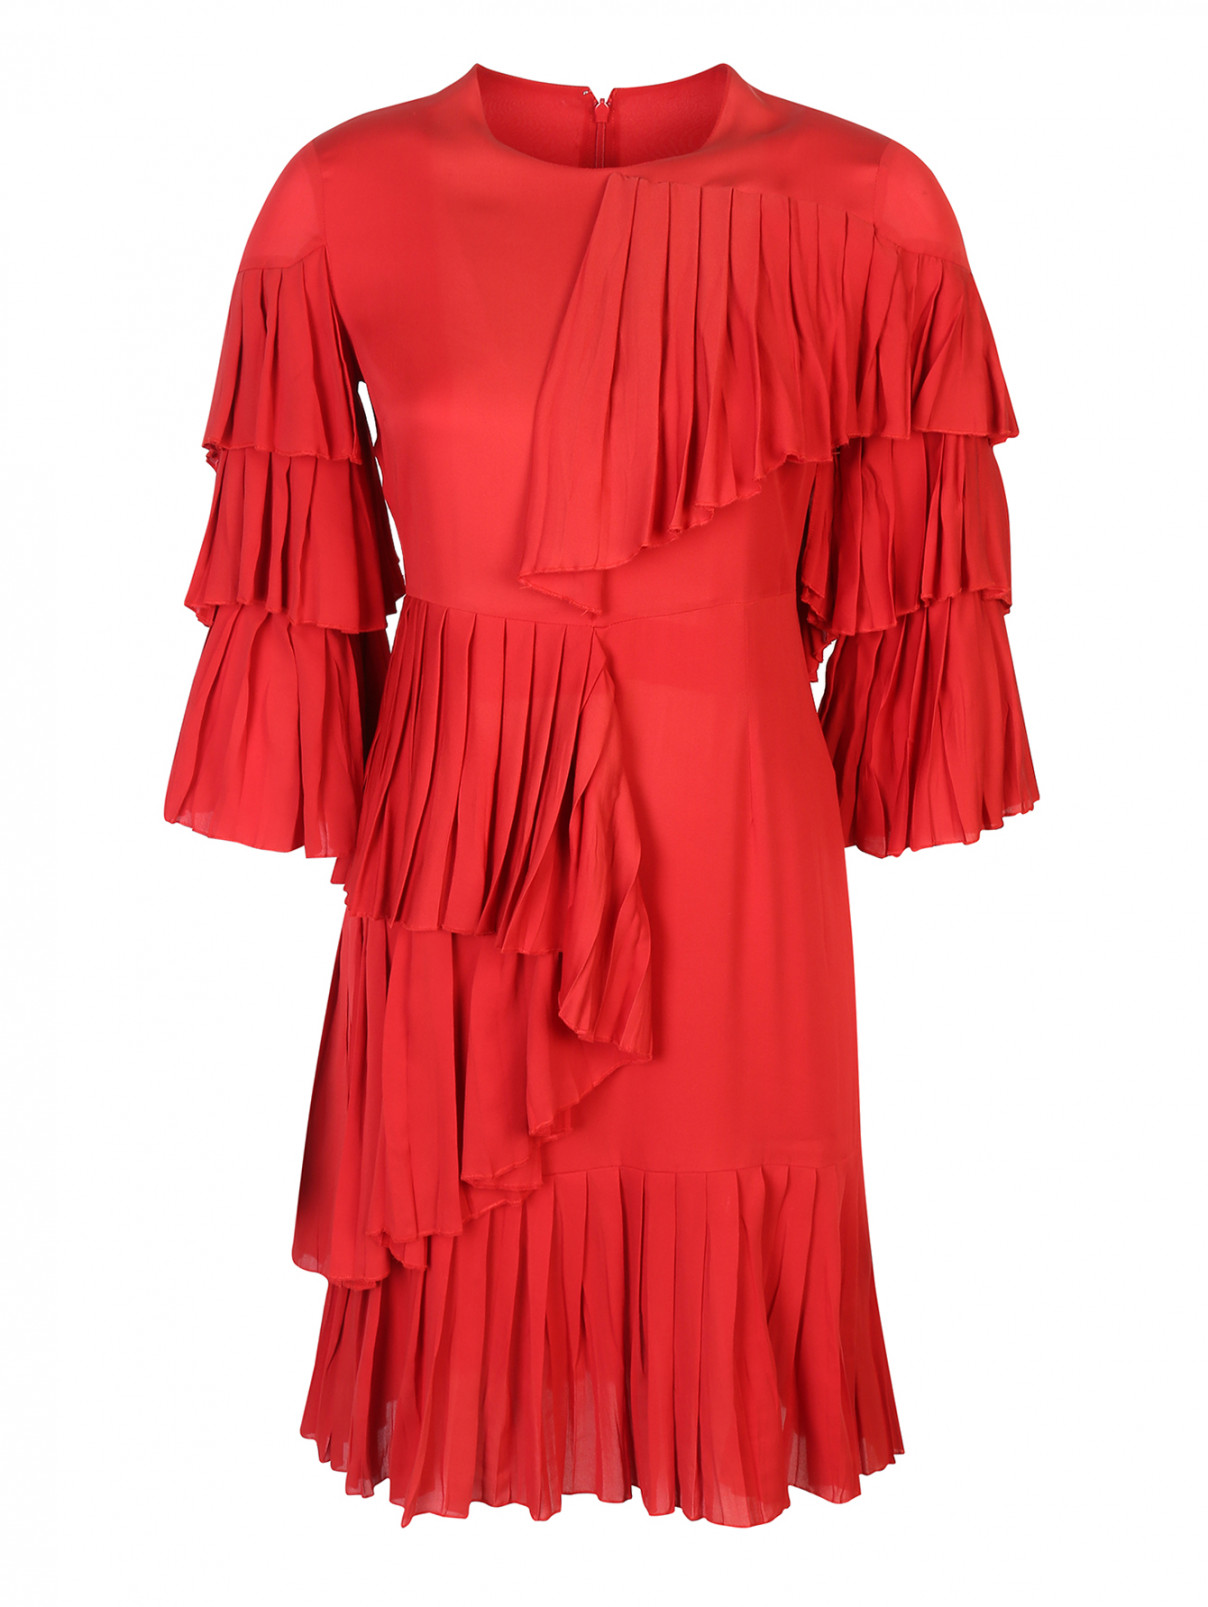 Платье шелковое, с воланами Gucci  –  Общий вид  – Цвет:  Красный